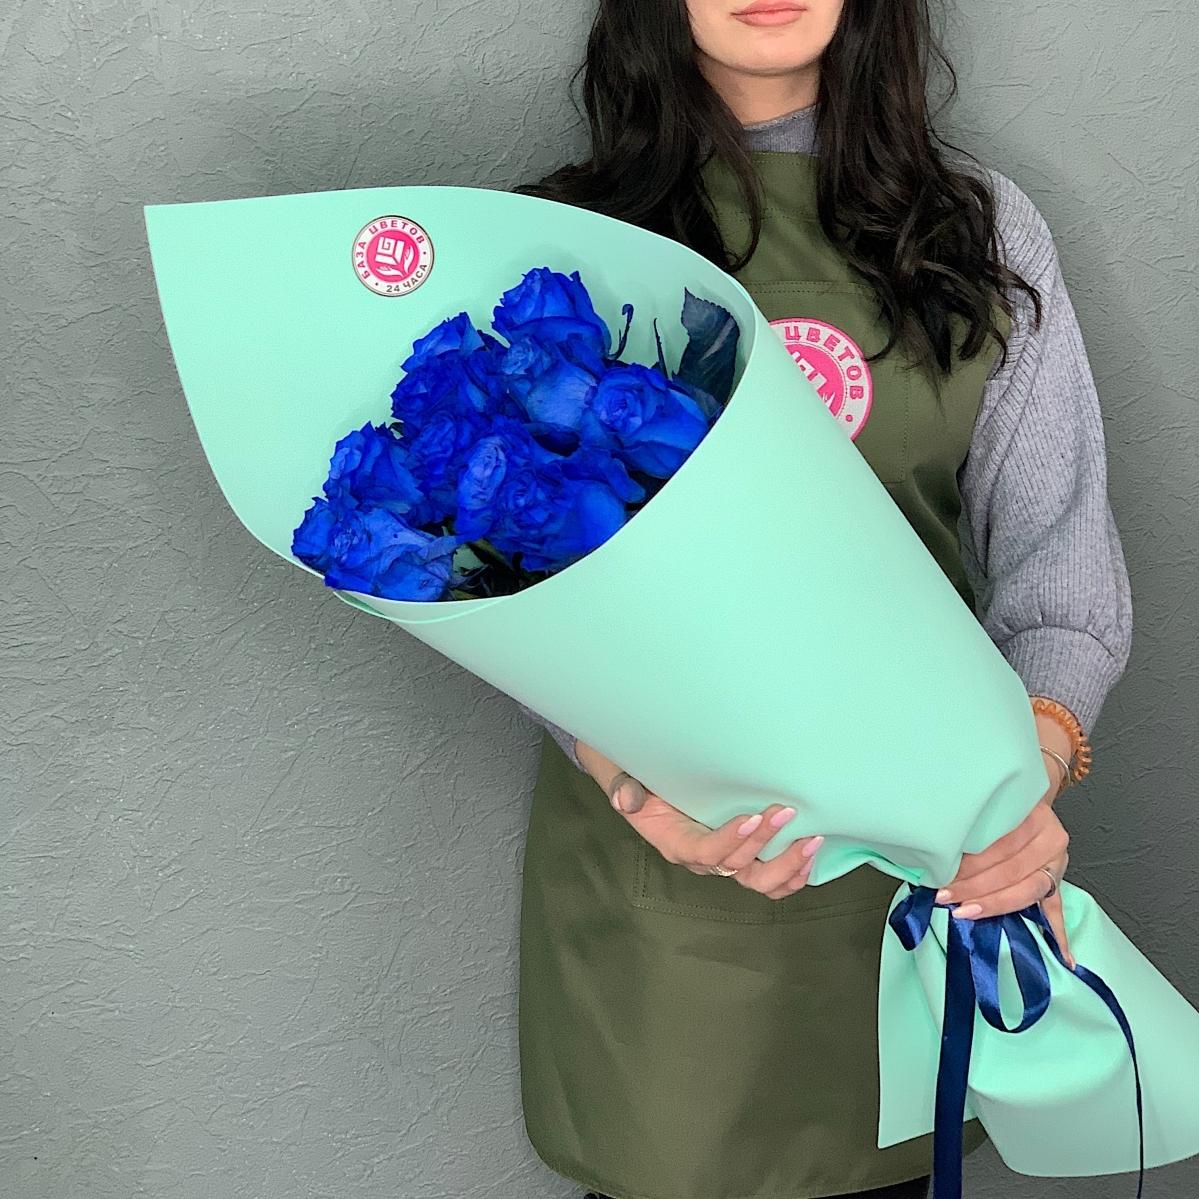 Эквадорские синие розы 70 см